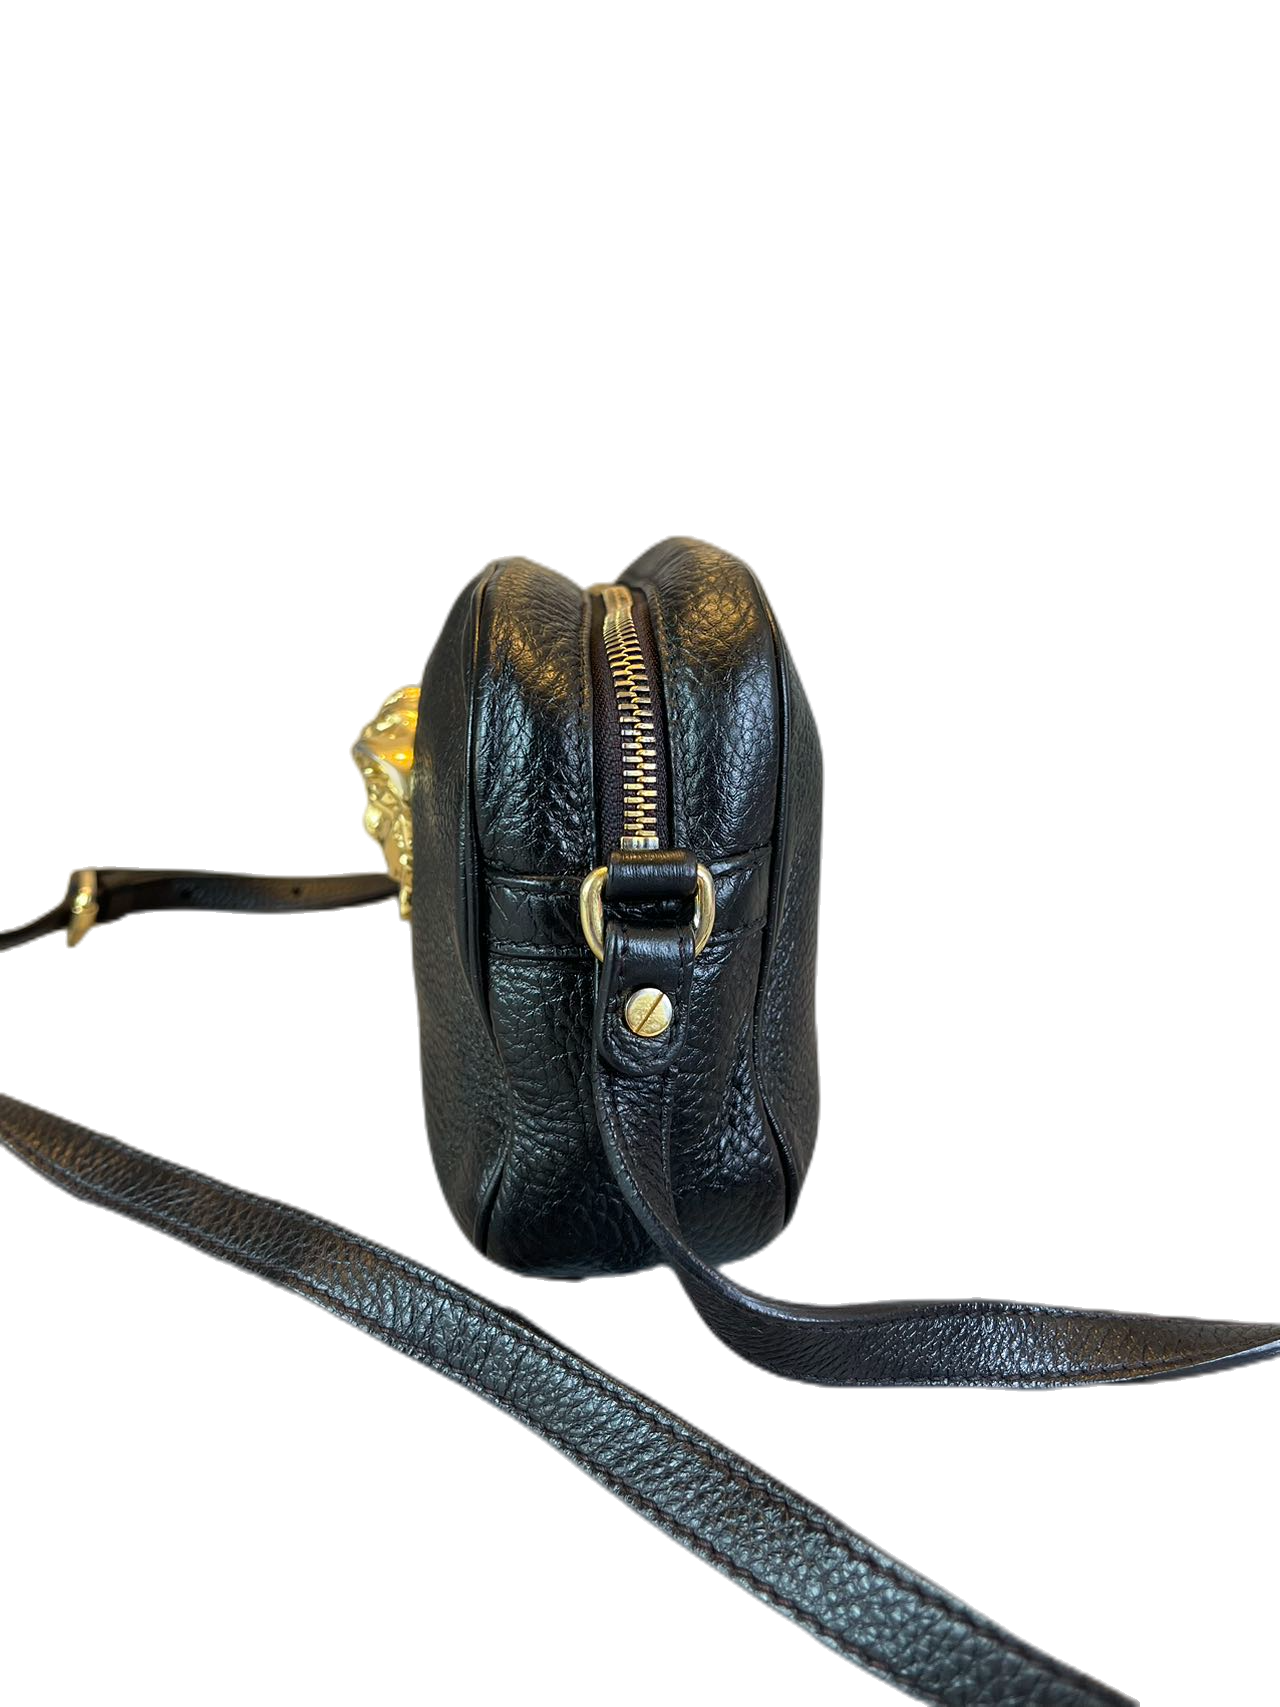 Versace Black Leather Shoulder bag Crossbody